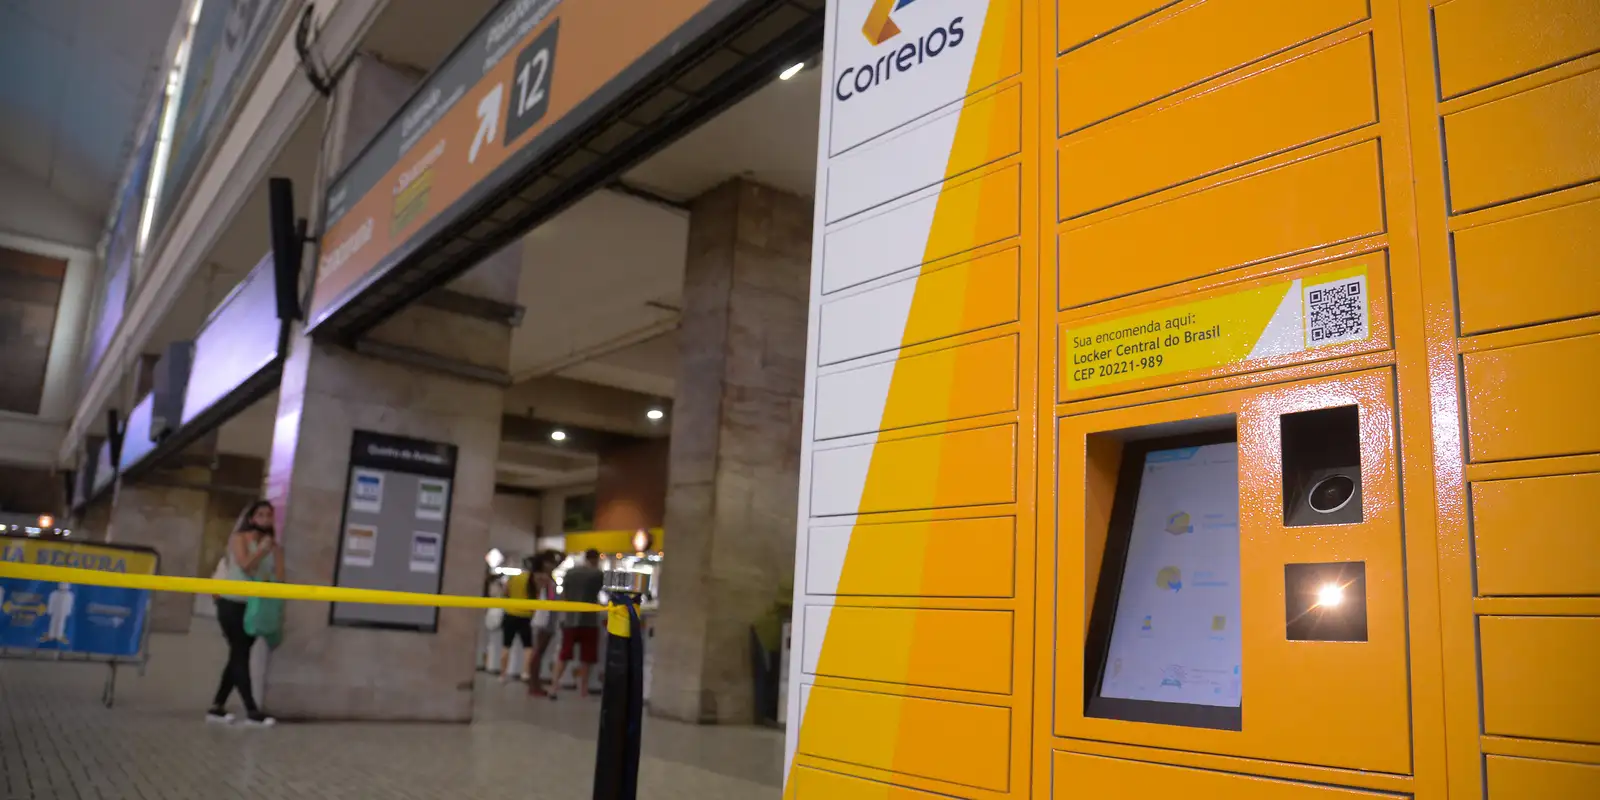 Após atraso na escolha da banca, Correios irá reiniciar processo sem prejuízo para o cronograma